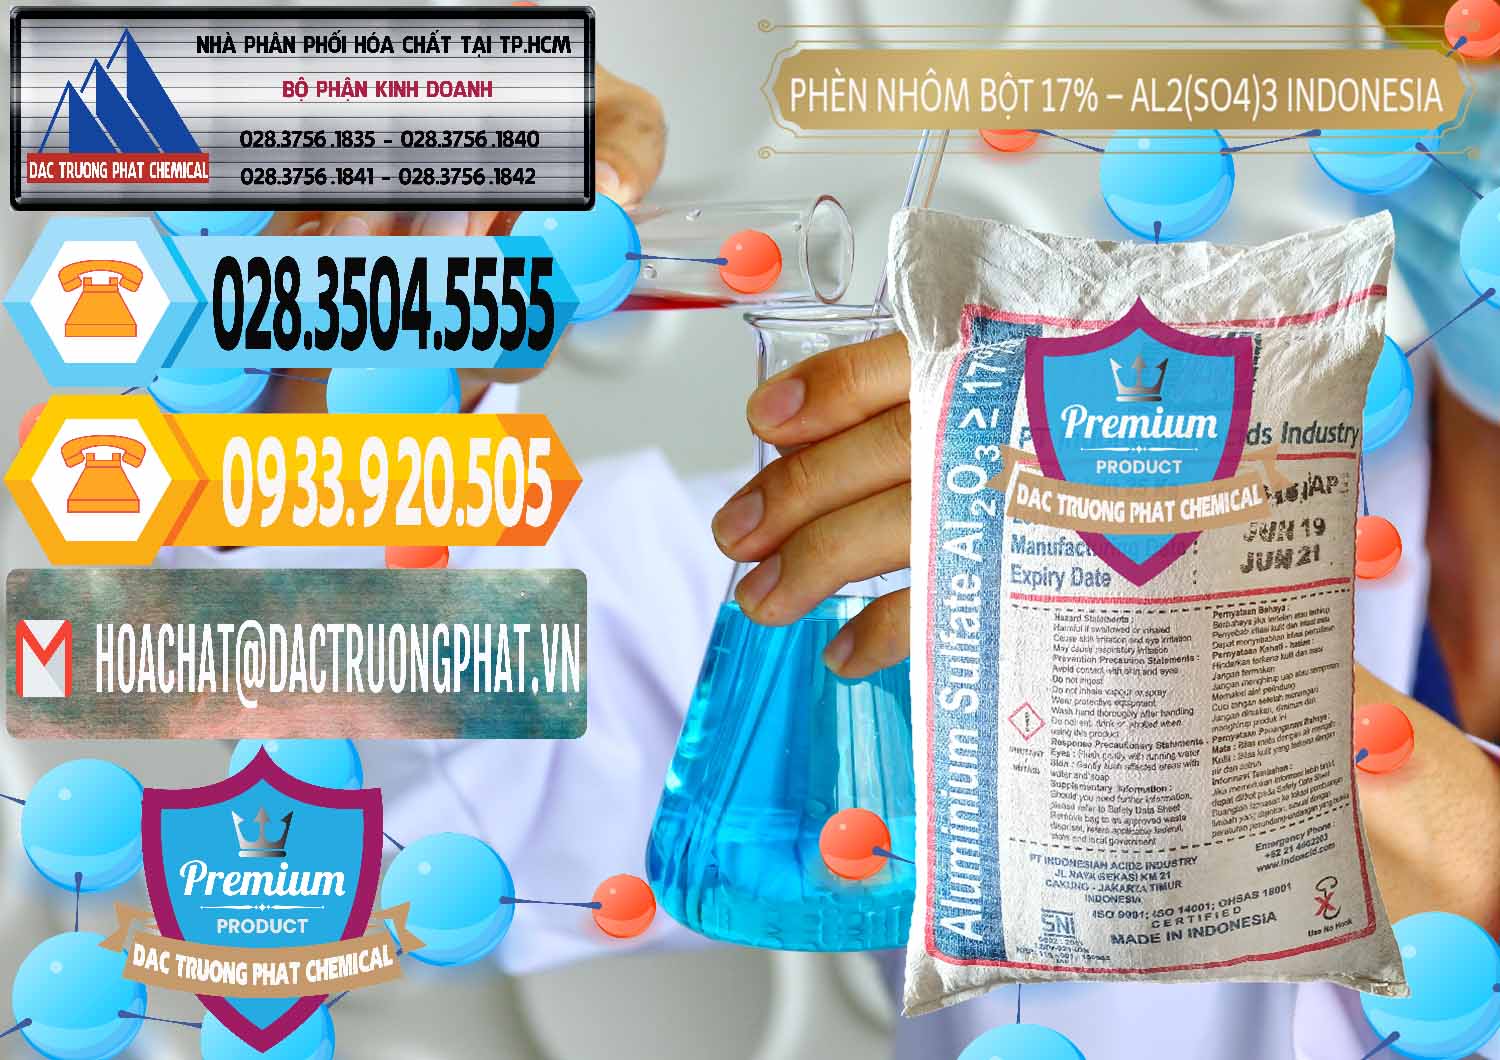 Nhà phân phối & bán Phèn Nhôm Bột - Al2(SO4)3 17% bao 25kg Indonesia - 0114 - Cty chuyên cung cấp ( nhập khẩu ) hóa chất tại TP.HCM - hoachattayrua.net